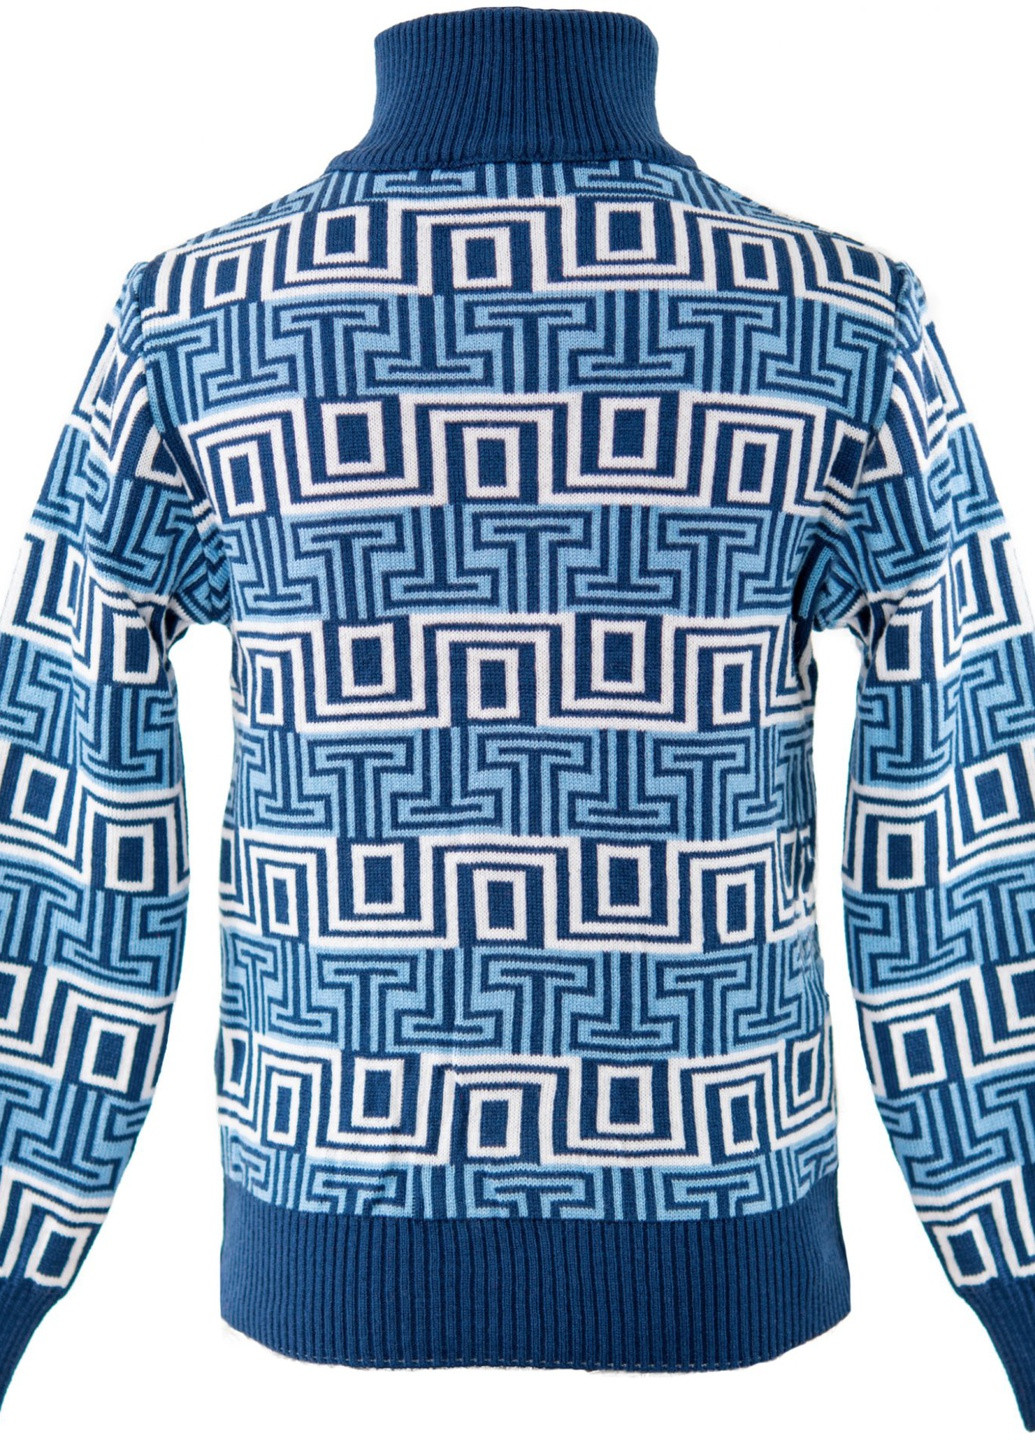 Синій светри кофта на дівчинку (т)17614-709 Lemanta